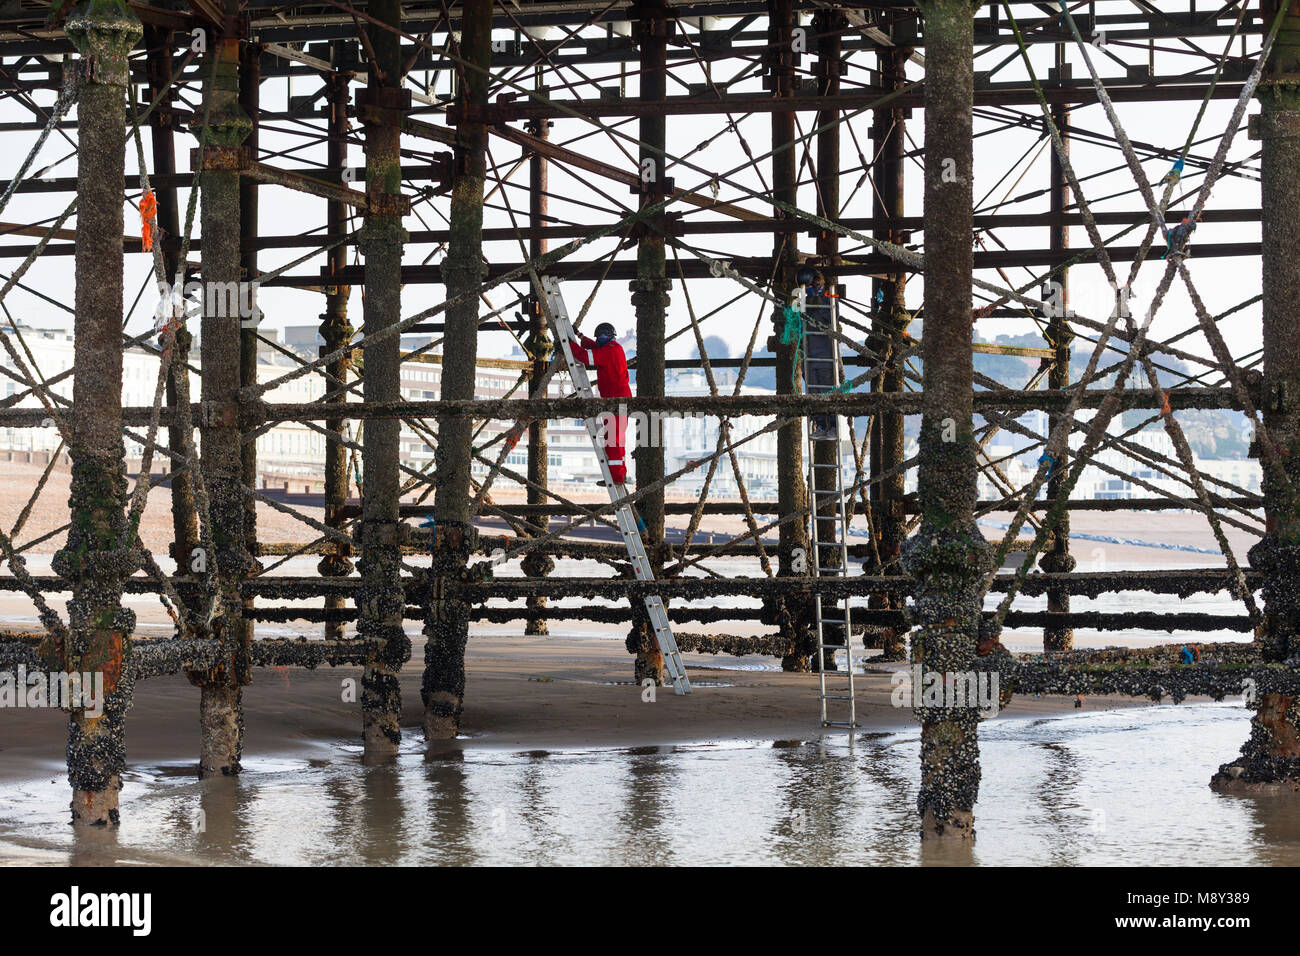 Umweltverschmutzung der Hastings Pier, ein Mann wird gesehen, klettern die Säulen der Pier, um alle Spuren von Seil und Kunststoffe zu reinigen, Großbritannien Stockfoto